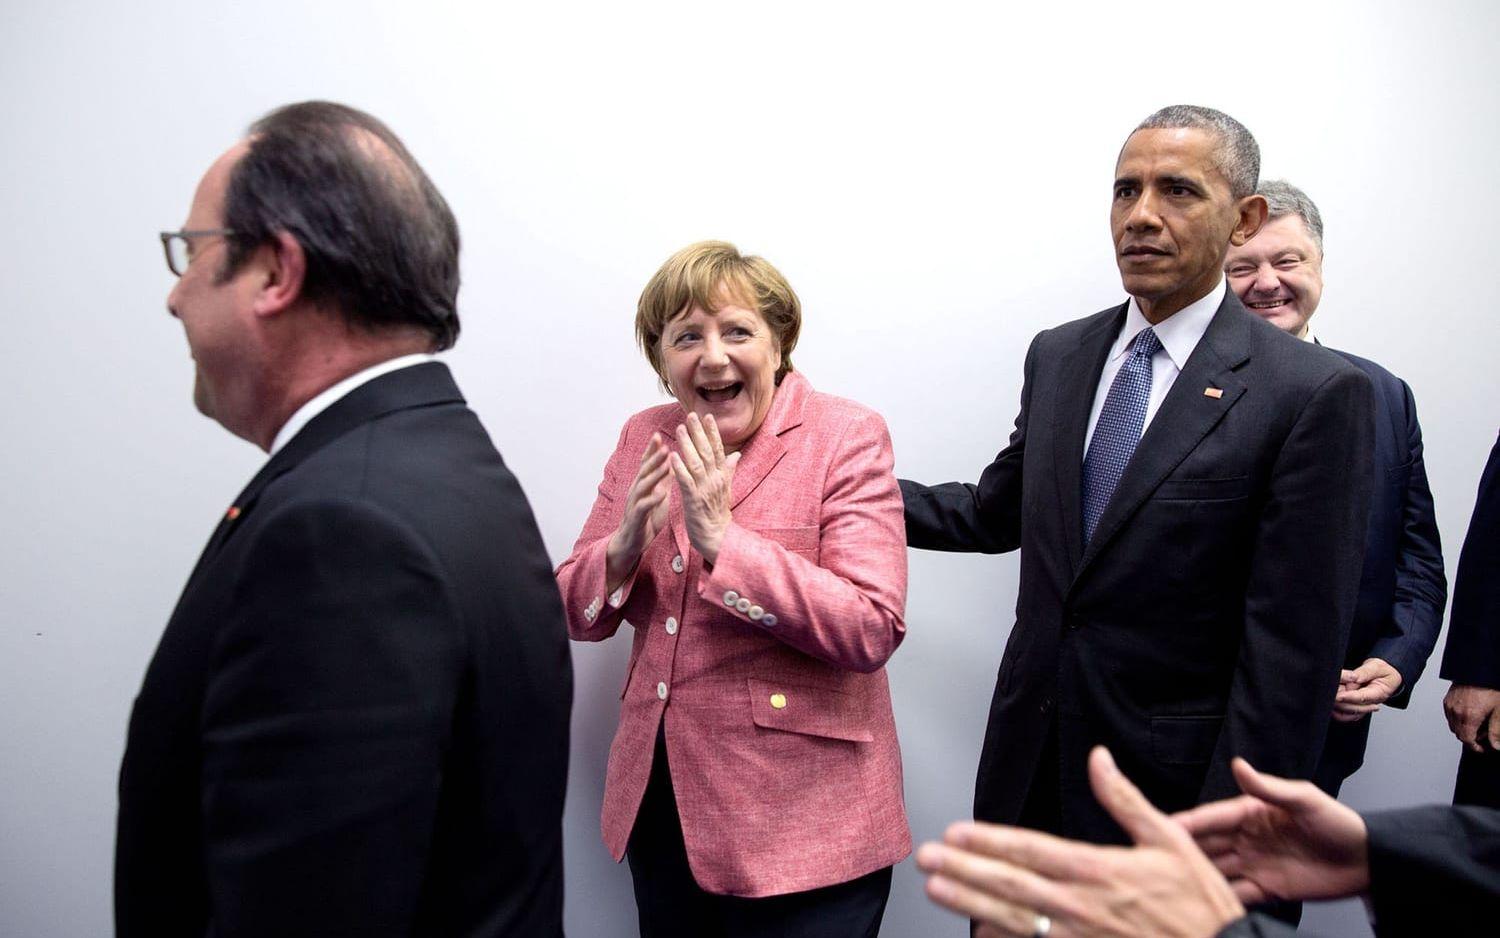 9 juli, 2016: Tysklands förbundskansler Angela Merkel reagerar med ett skratt när hon inser att det skett ett missförstånd med pressfotograferna.